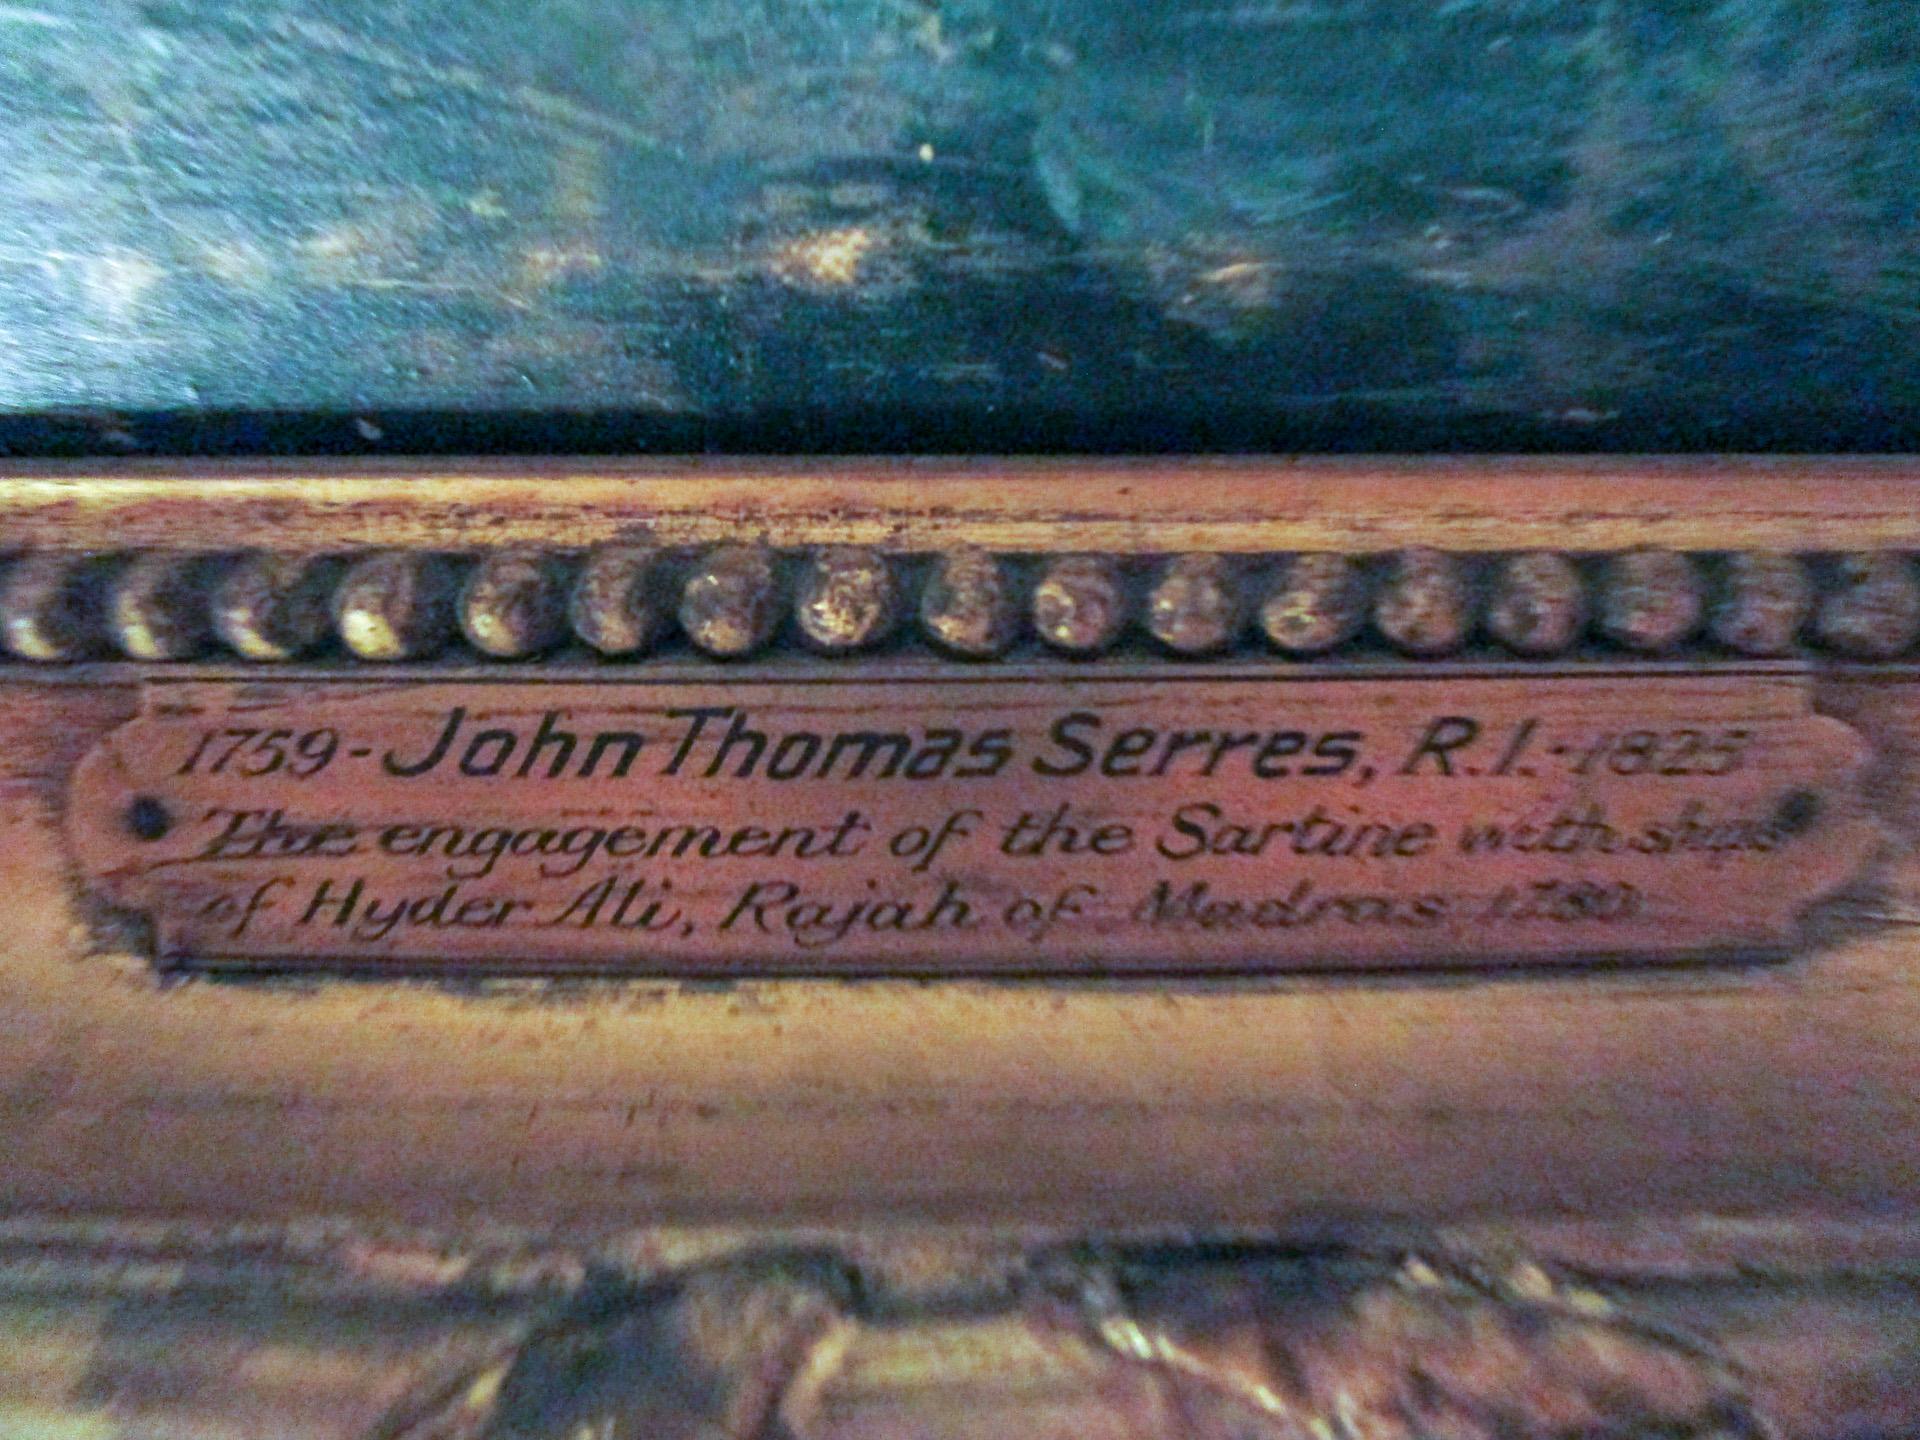 John Thomas Serres (1759-1825) war ein englischer Marinemaler, der große Erfolge feierte, unter anderem in der Royal Academy ausstellte und eine Zeit lang Marinemaler von König Georg III. war. Dieses Gemälde ist in Öl auf Leinwand gemalt und zeigt